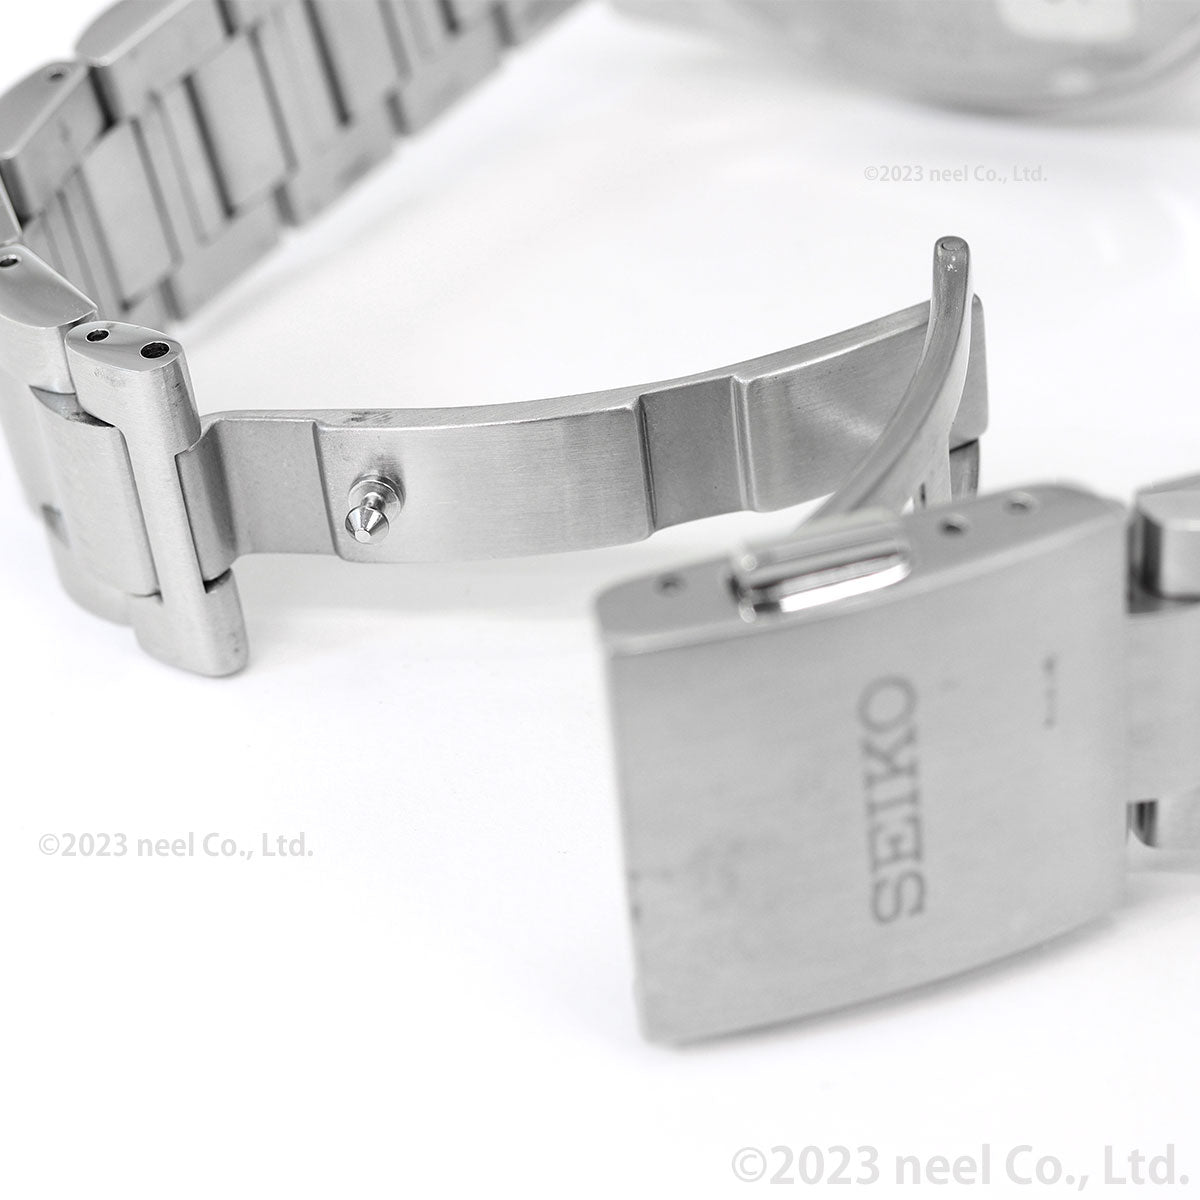 セイコー プロスペックス SBDL095 SPEEDTIMER スピードタイマー ソーラー クロノグラフ メンズ 腕時計 パンダ 日本製 SEIKO PROSPEX